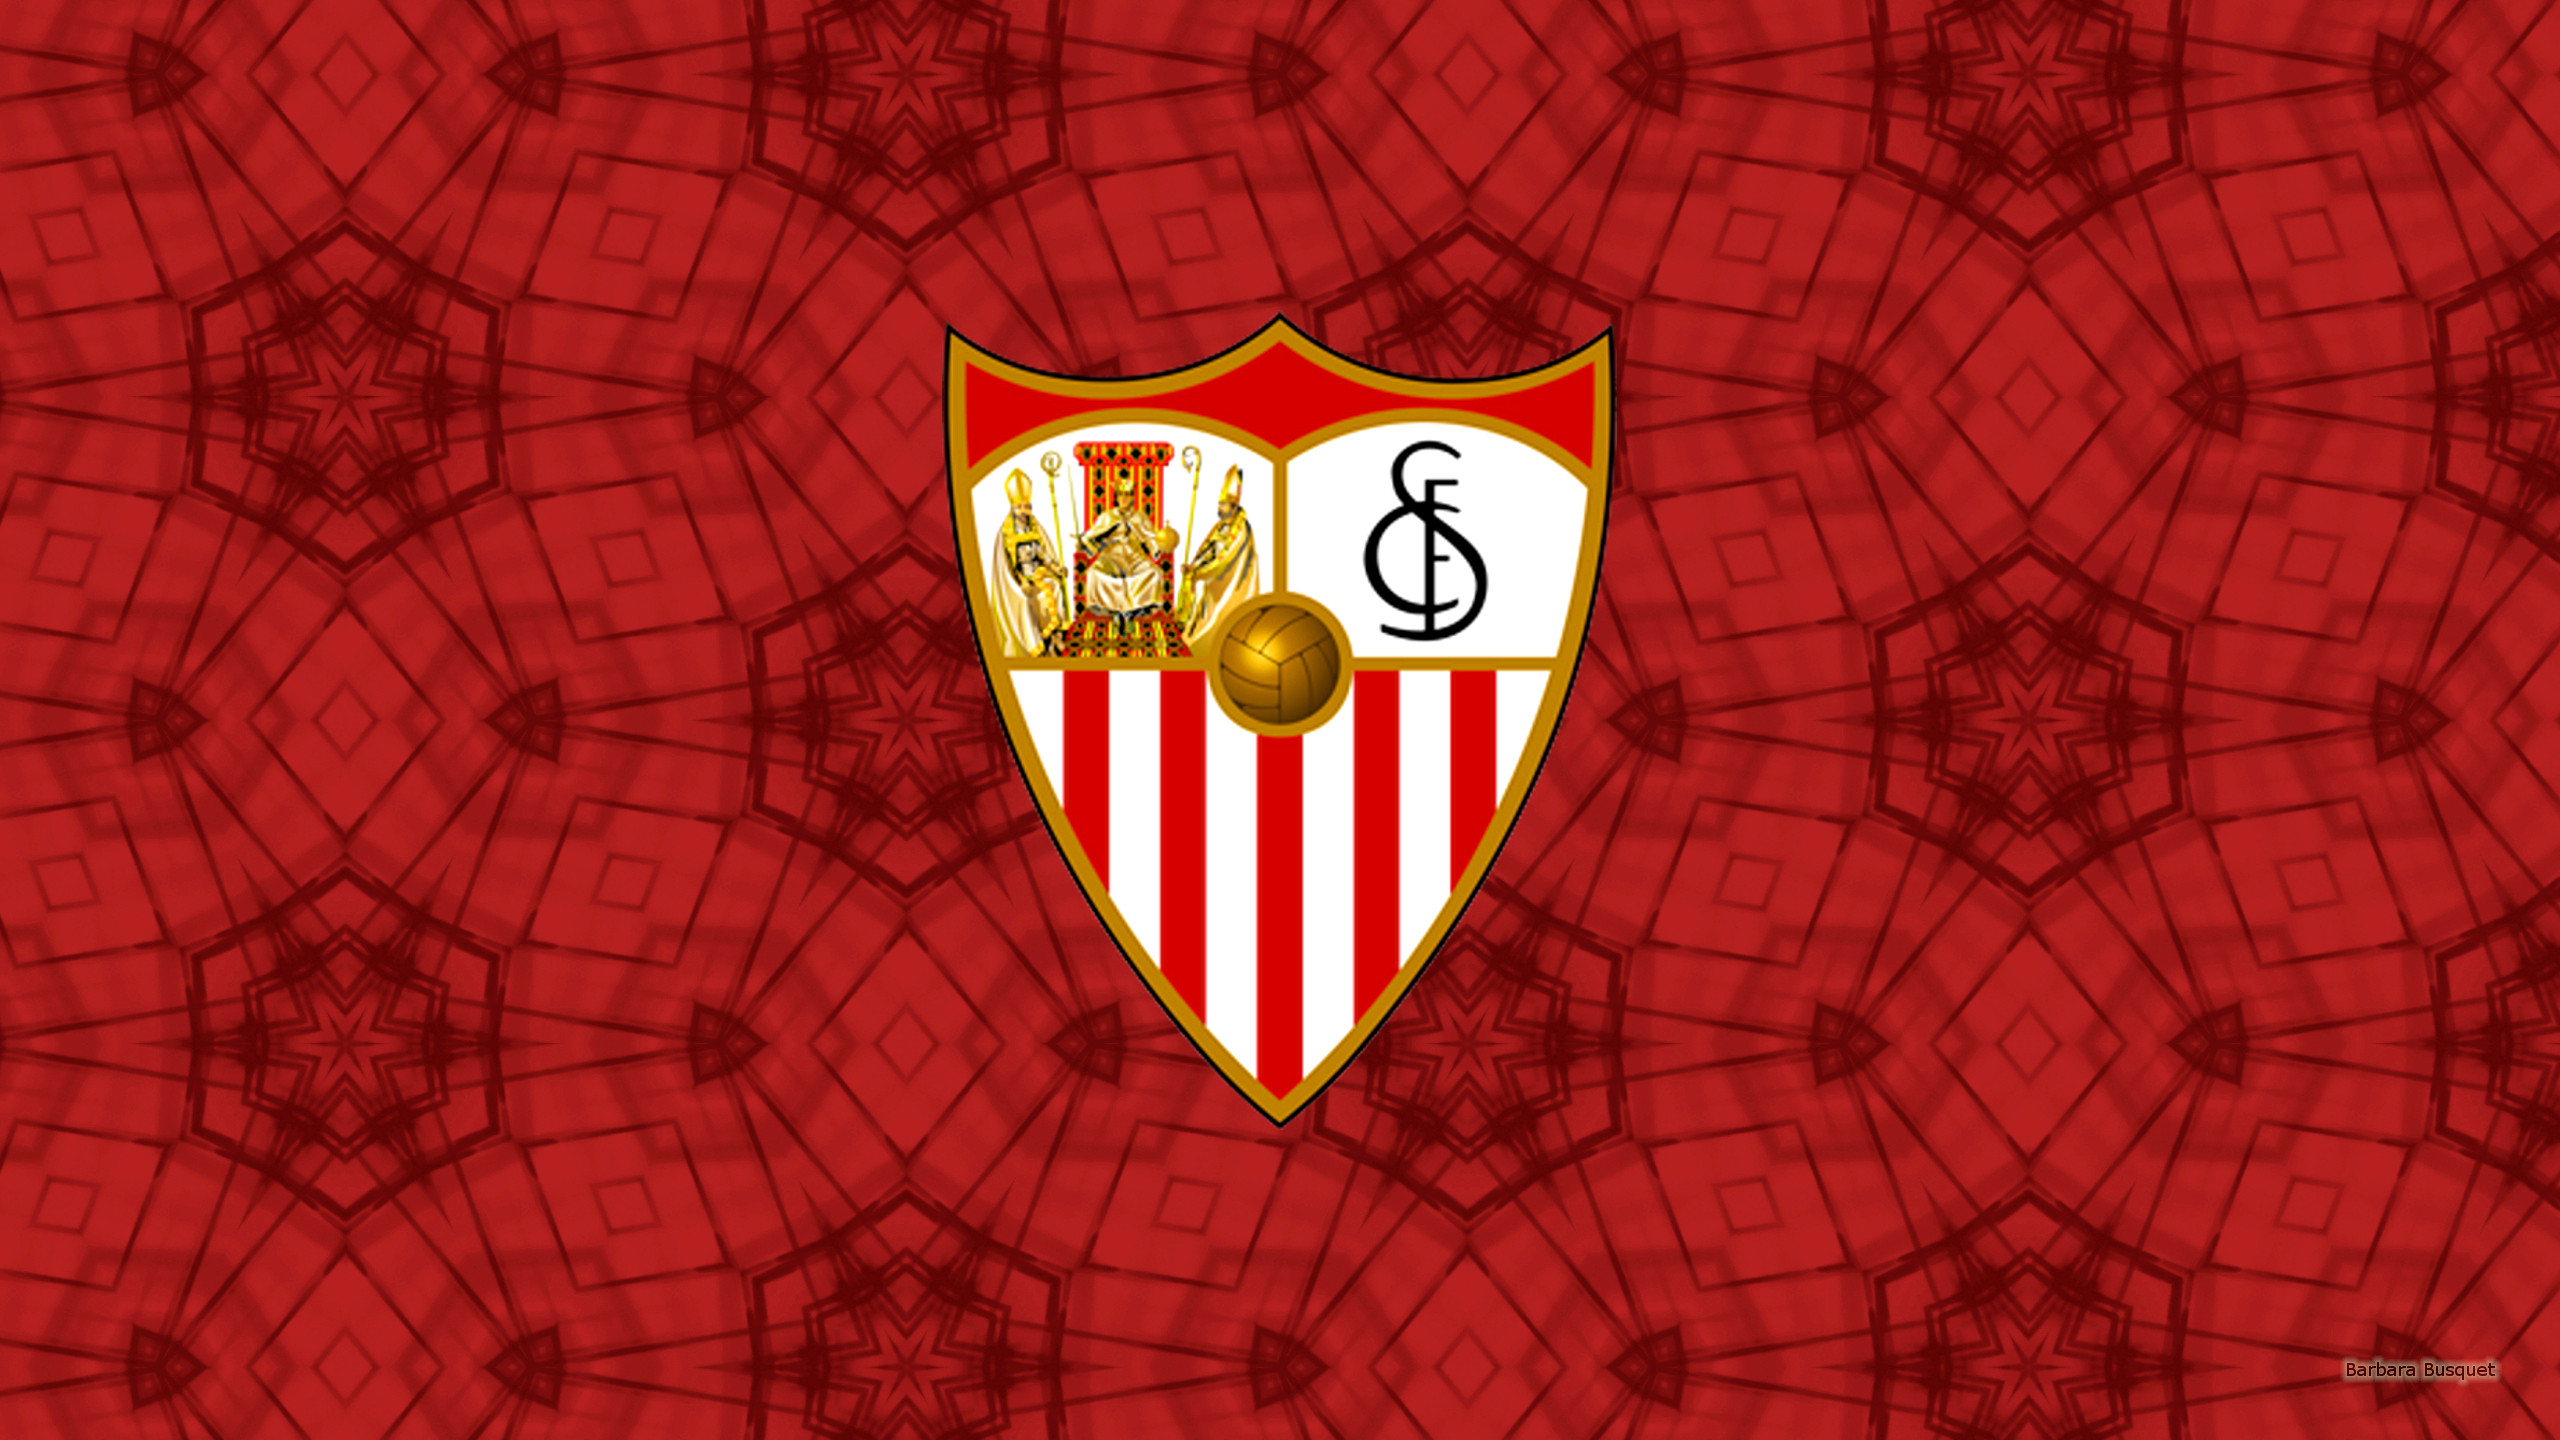 Sevilla F Tbol Club S A D Barbaras HD Wallpaper